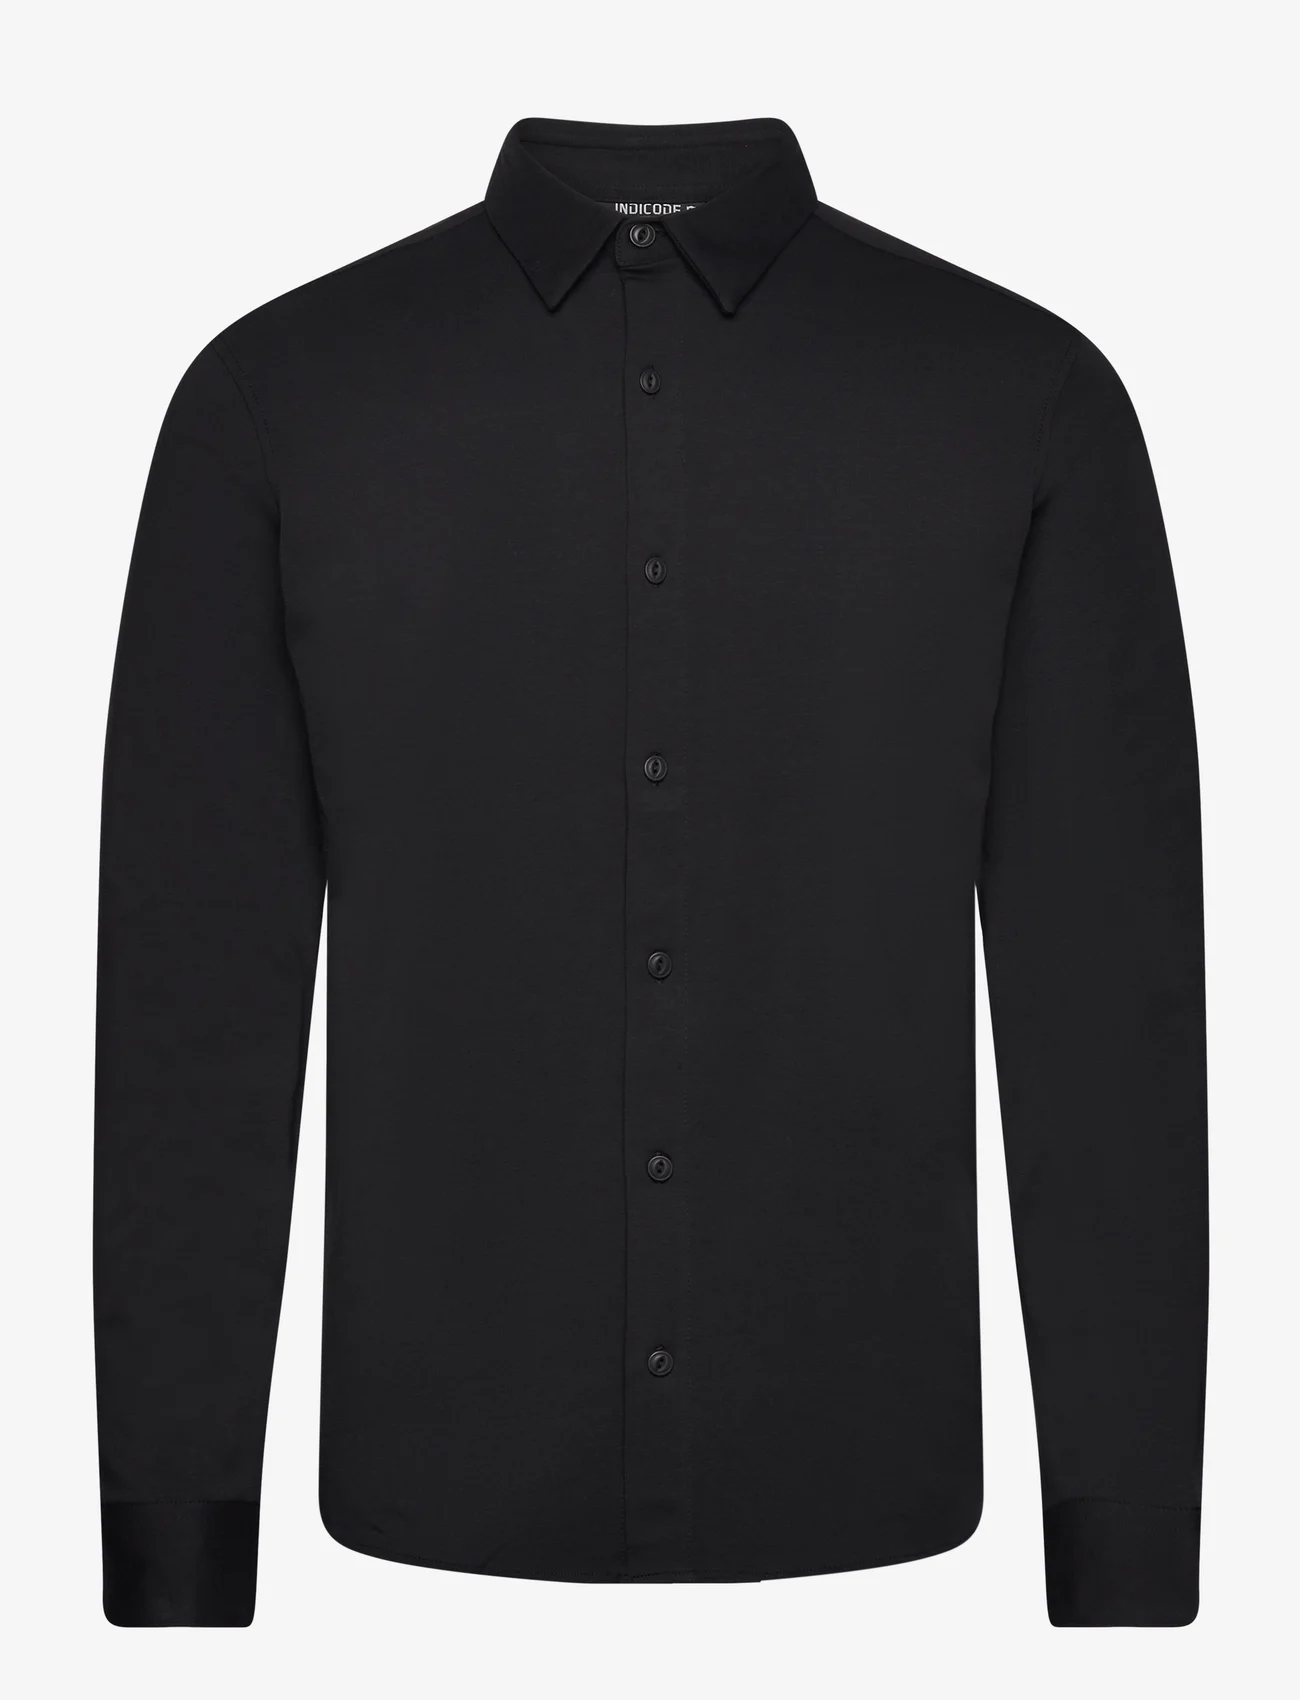 INDICODE - INTheo - laisvalaikio marškiniai - black - 0